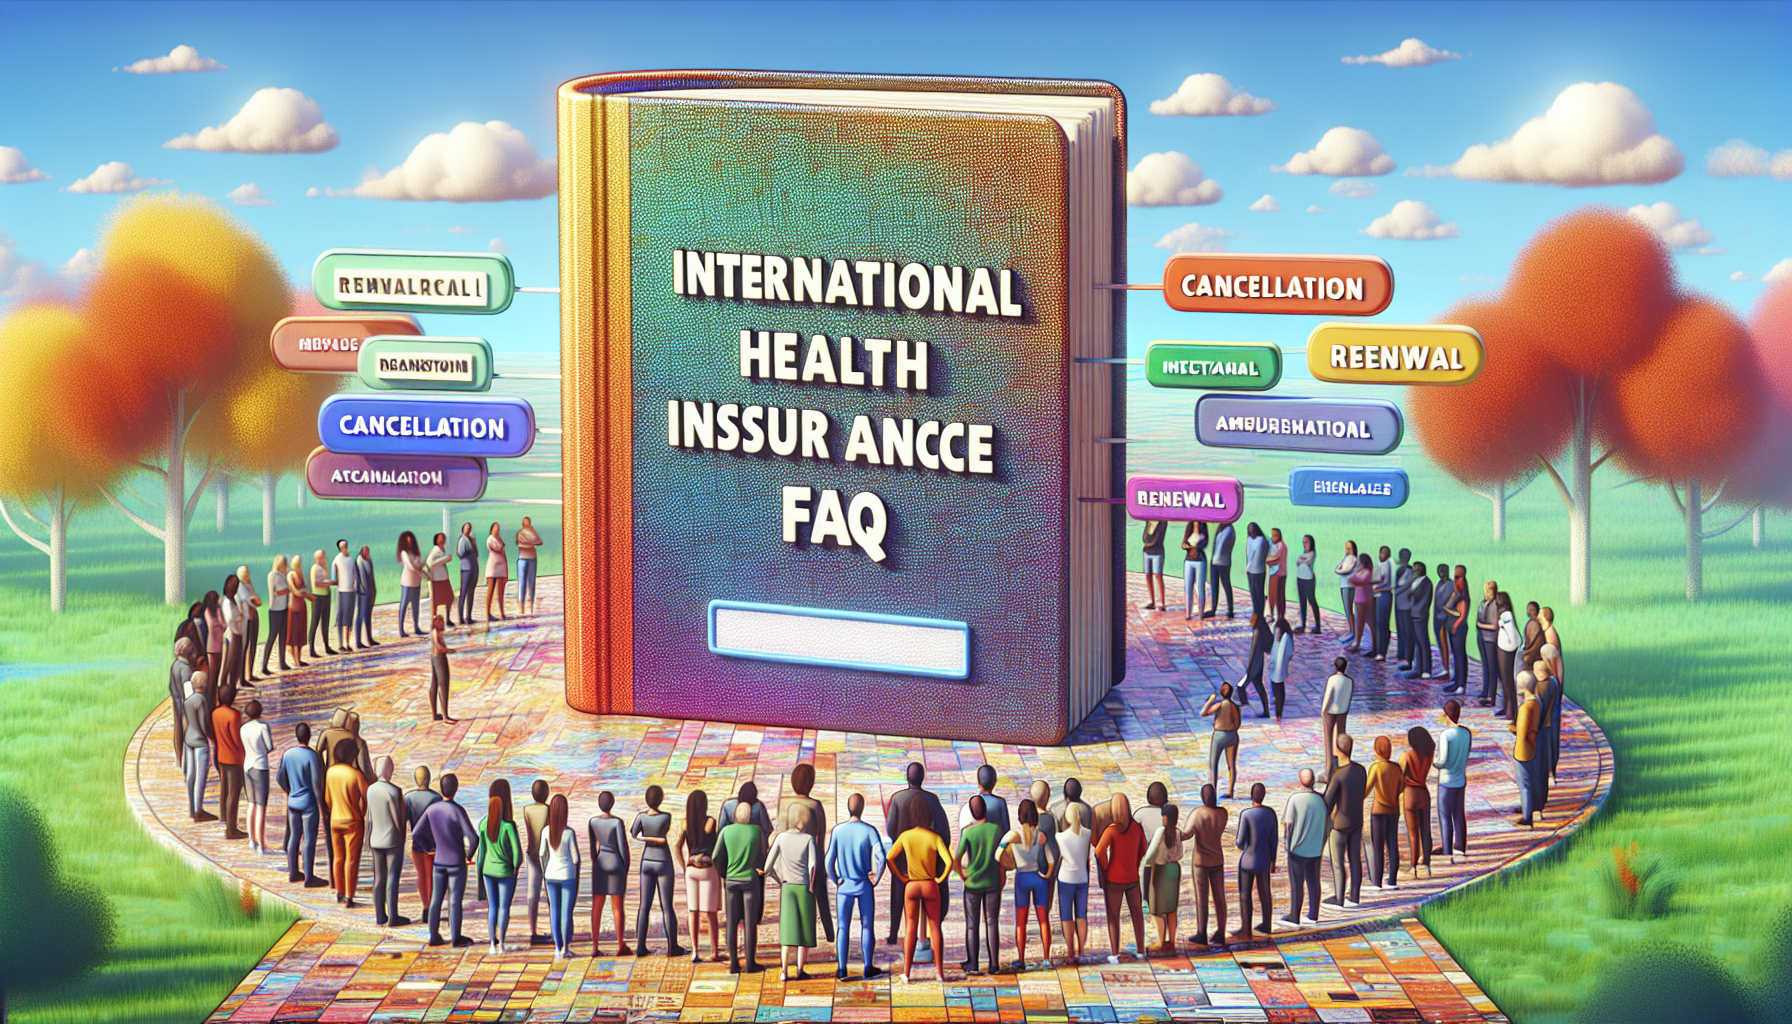 découvrez tout ce qu'il faut savoir sur la résiliation et le renouvellement de l'assurance santé internationale dans cette faq complète.